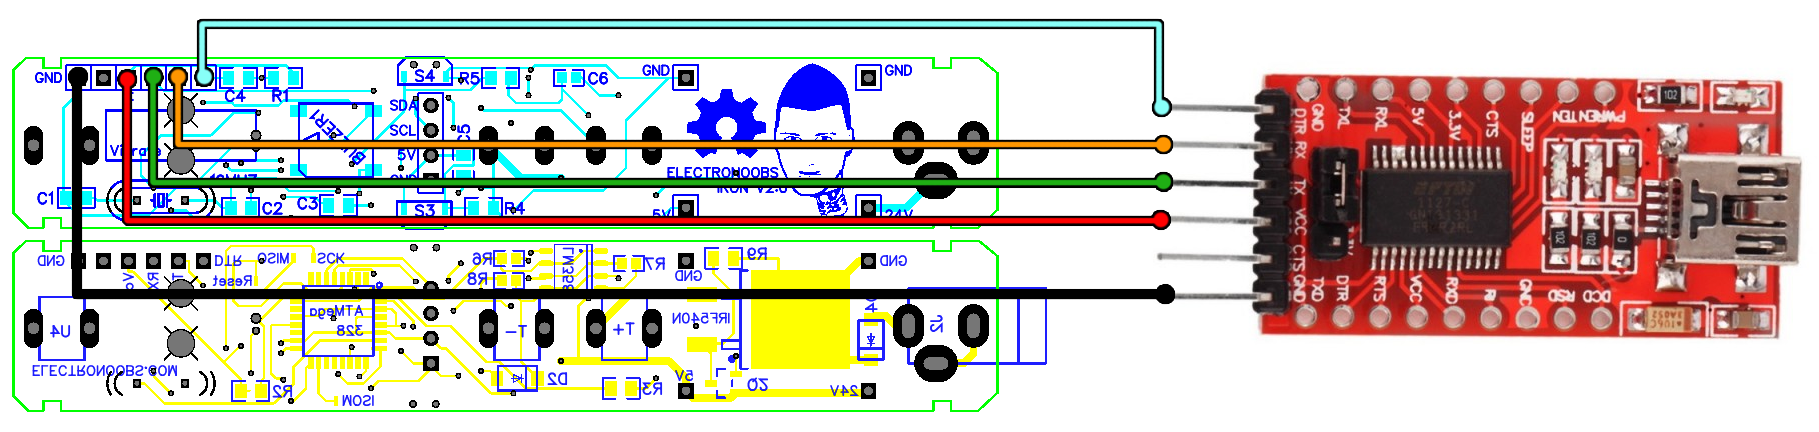 arduino schematic soldering station